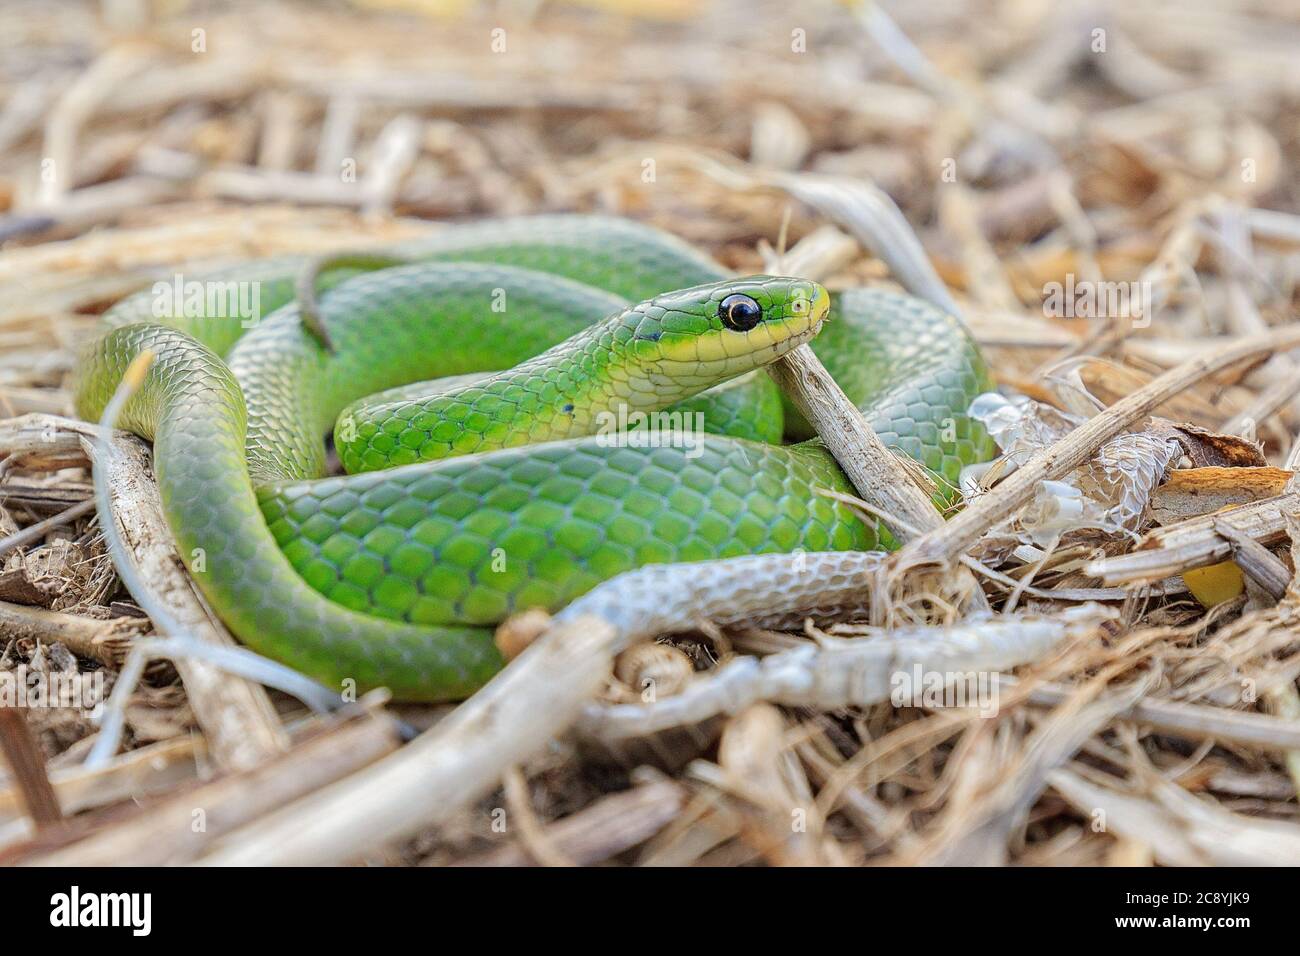 Un serpent vert lisse enroulé dans de l'herbe morte. Banque D'Images